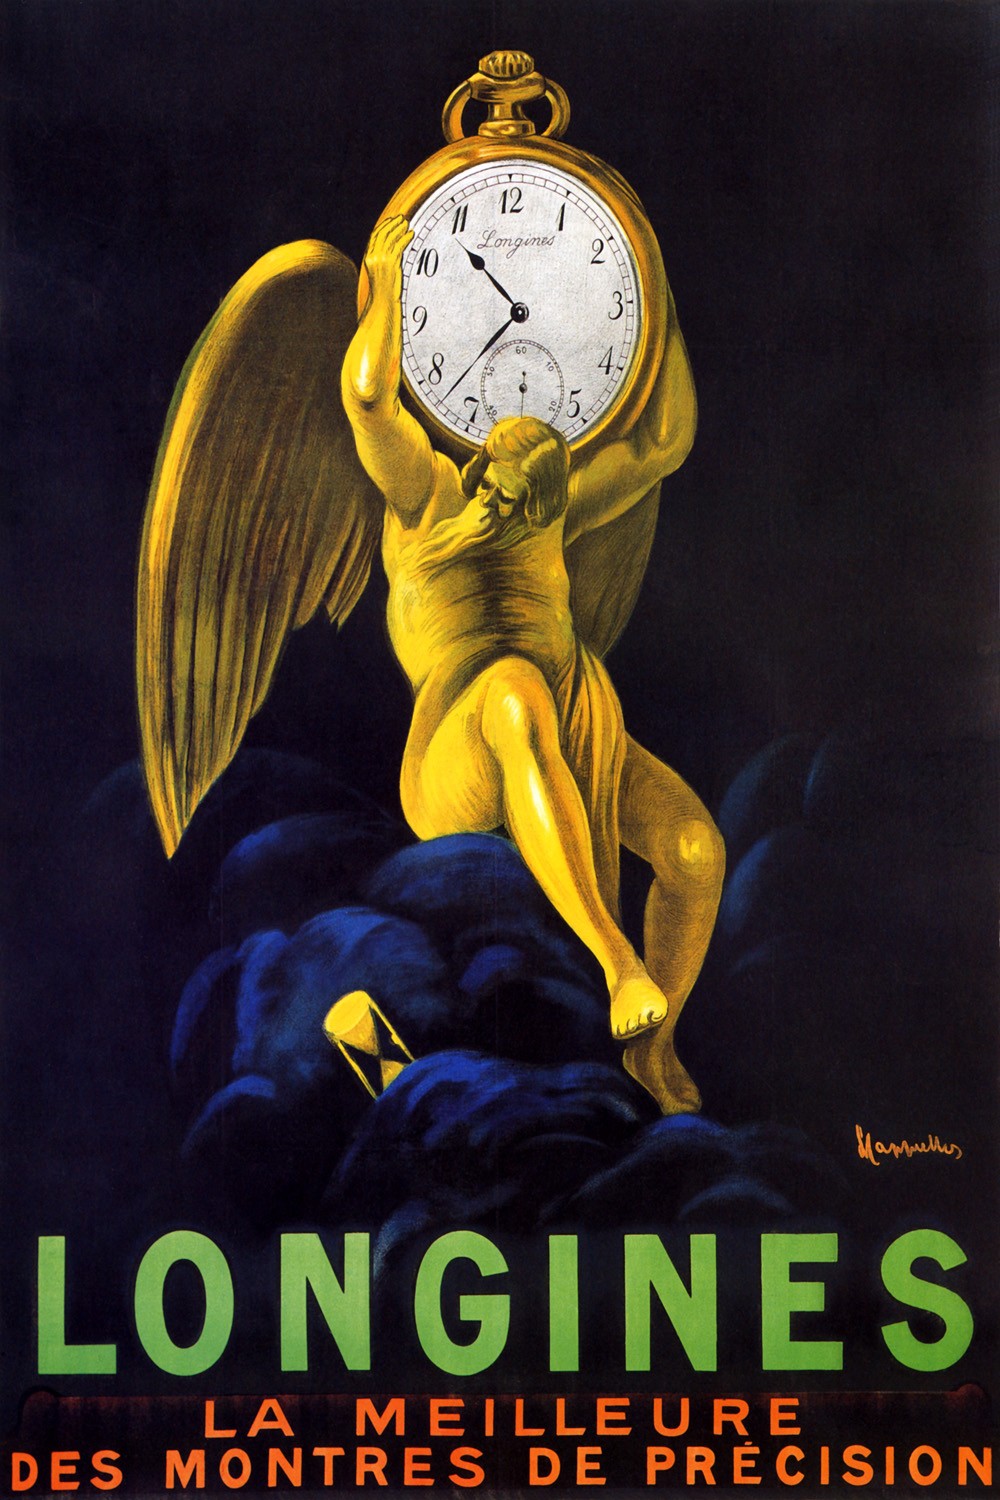 Foto 1 - Relogio Longines de Cappiello França Vintage Cartaz Poster em Papel Matte